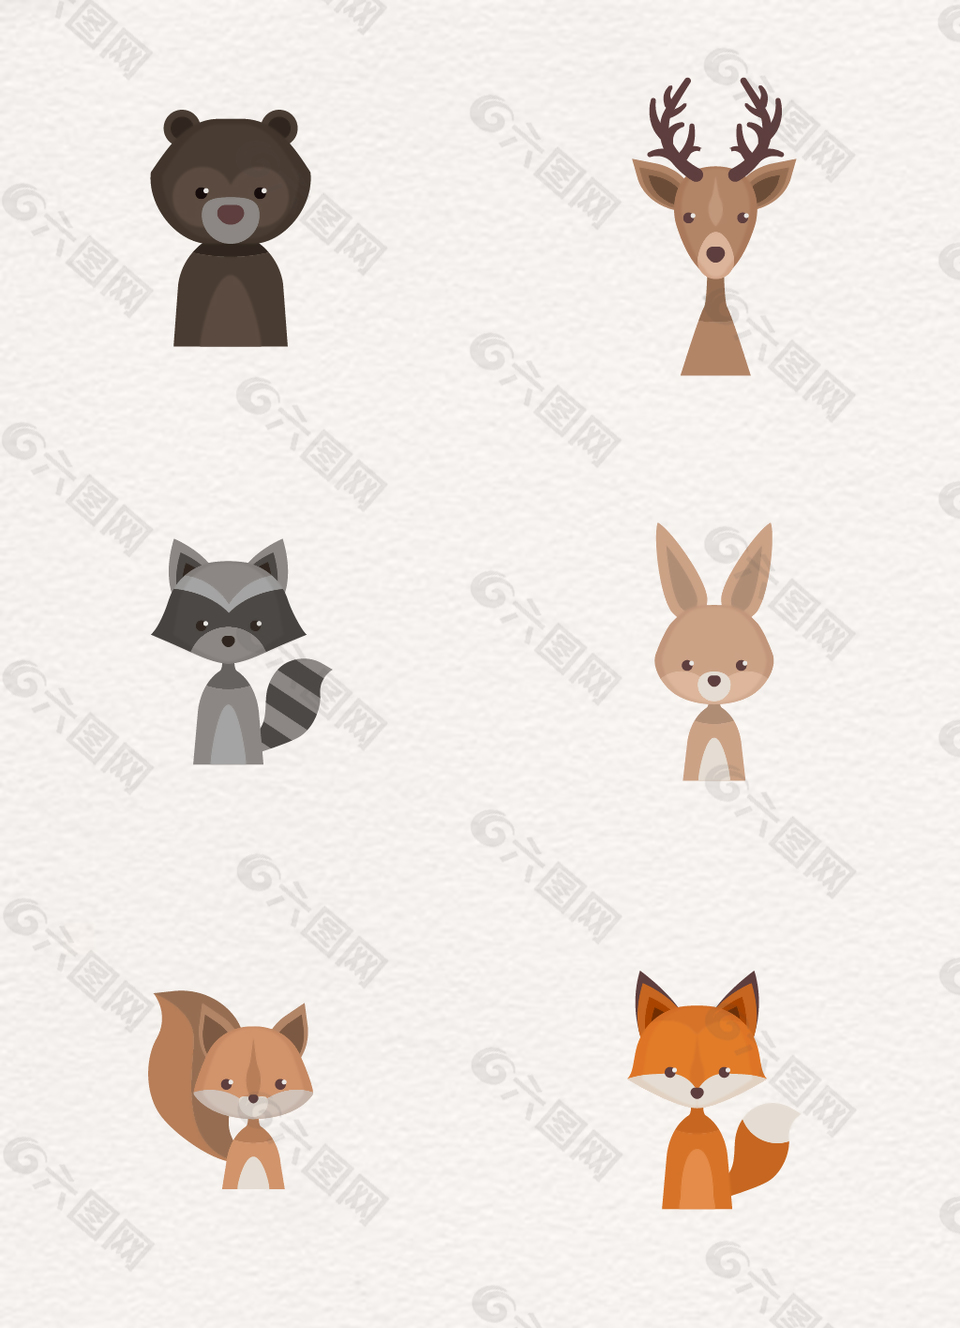 6组可爱的动物设计素材